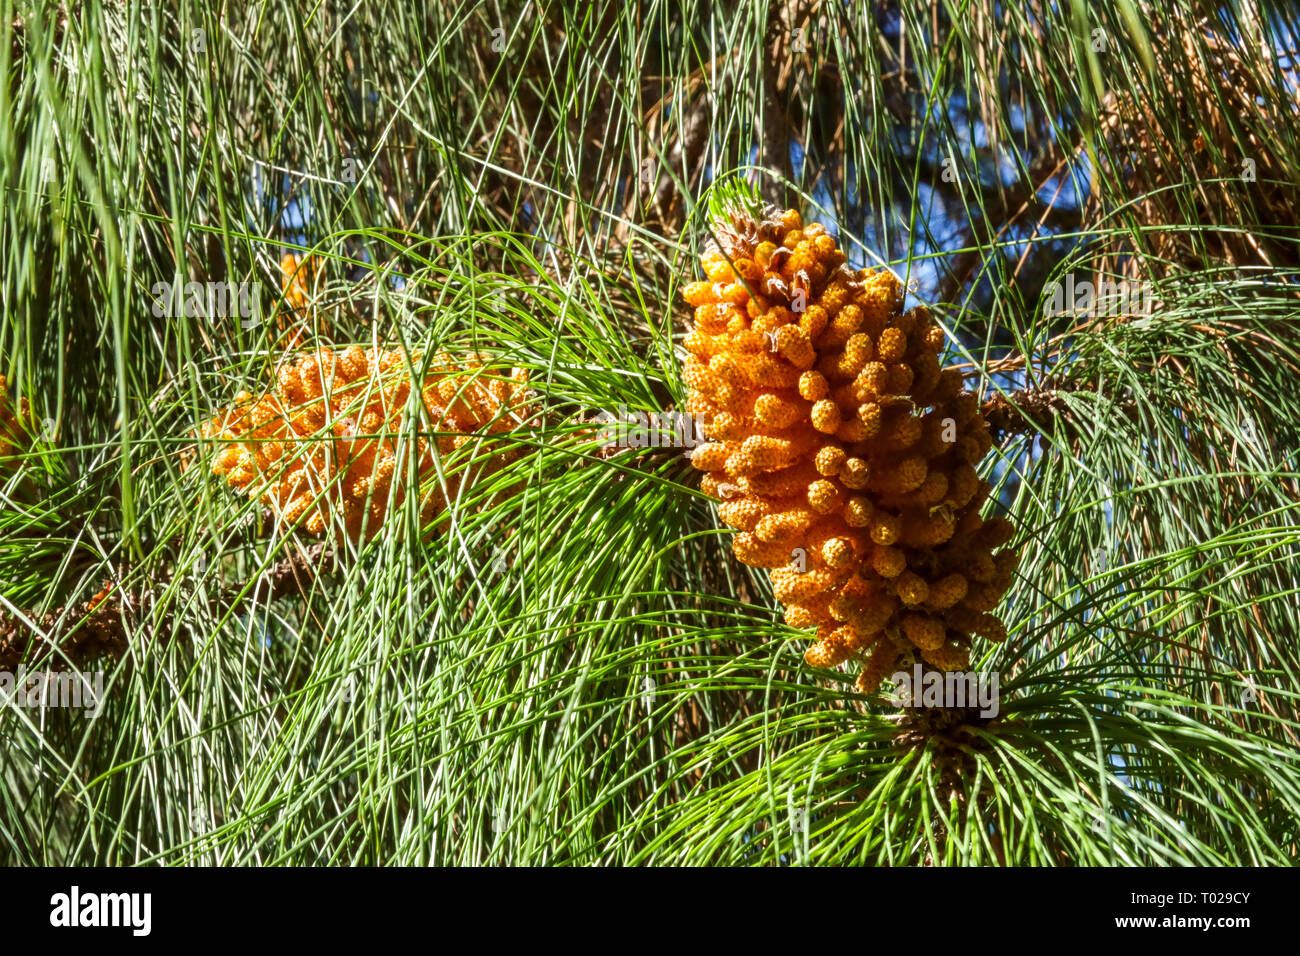 Pino delle Isole Canarie, Pinus canariensis, coni primaverili coni di conifere fiorite di Pinus pieni di coni maschi di polline Foto Stock